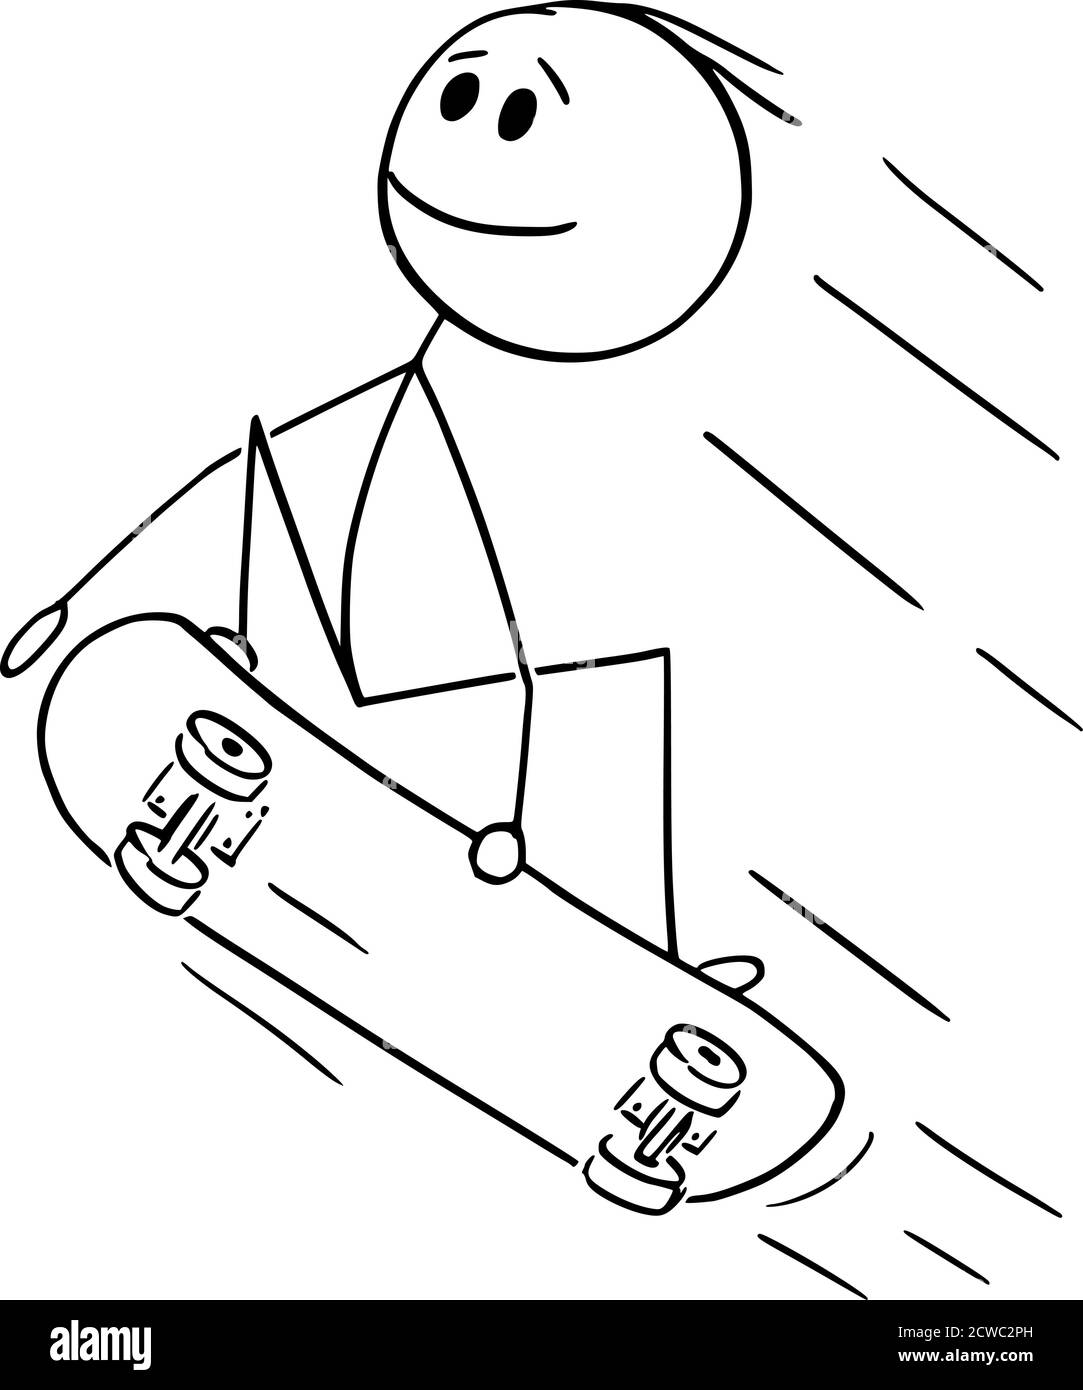 Disegno vettoriale di figure di bastone cartoon illustrazione concettuale di uomo, ragazzo, skater o skateboarder saltando o facendo trucco o skateboard su skateboard. Illustrazione Vettoriale